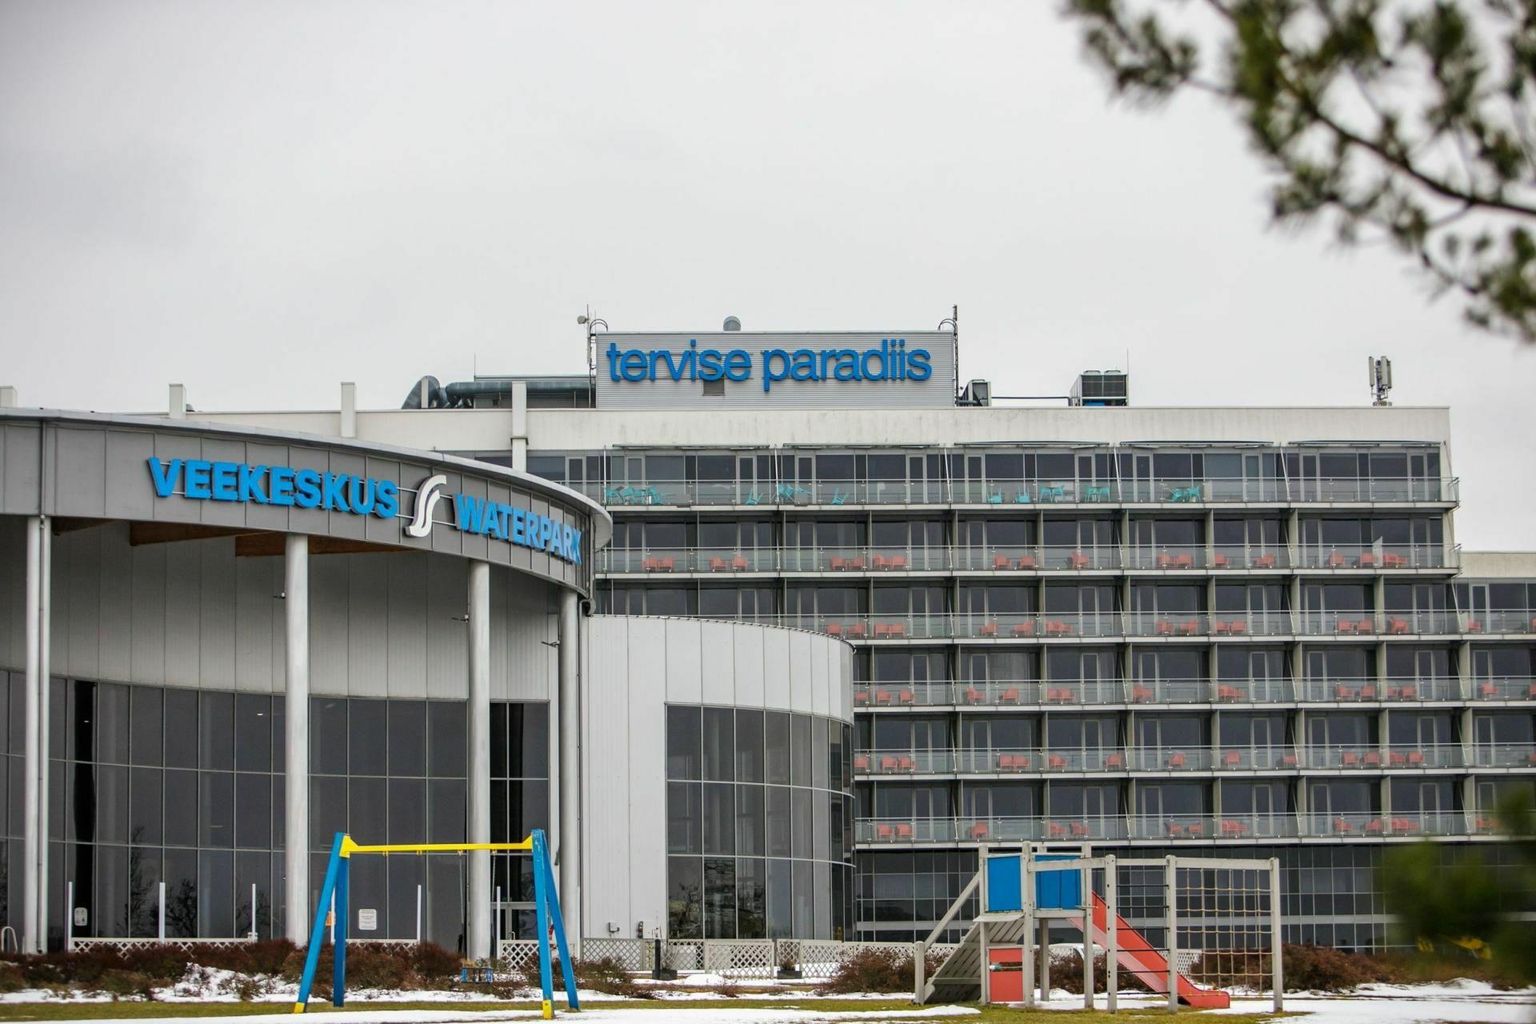 Трагический несчастный случай произошел 11 марта в пярнуском водном центре Tervise Paradiis.